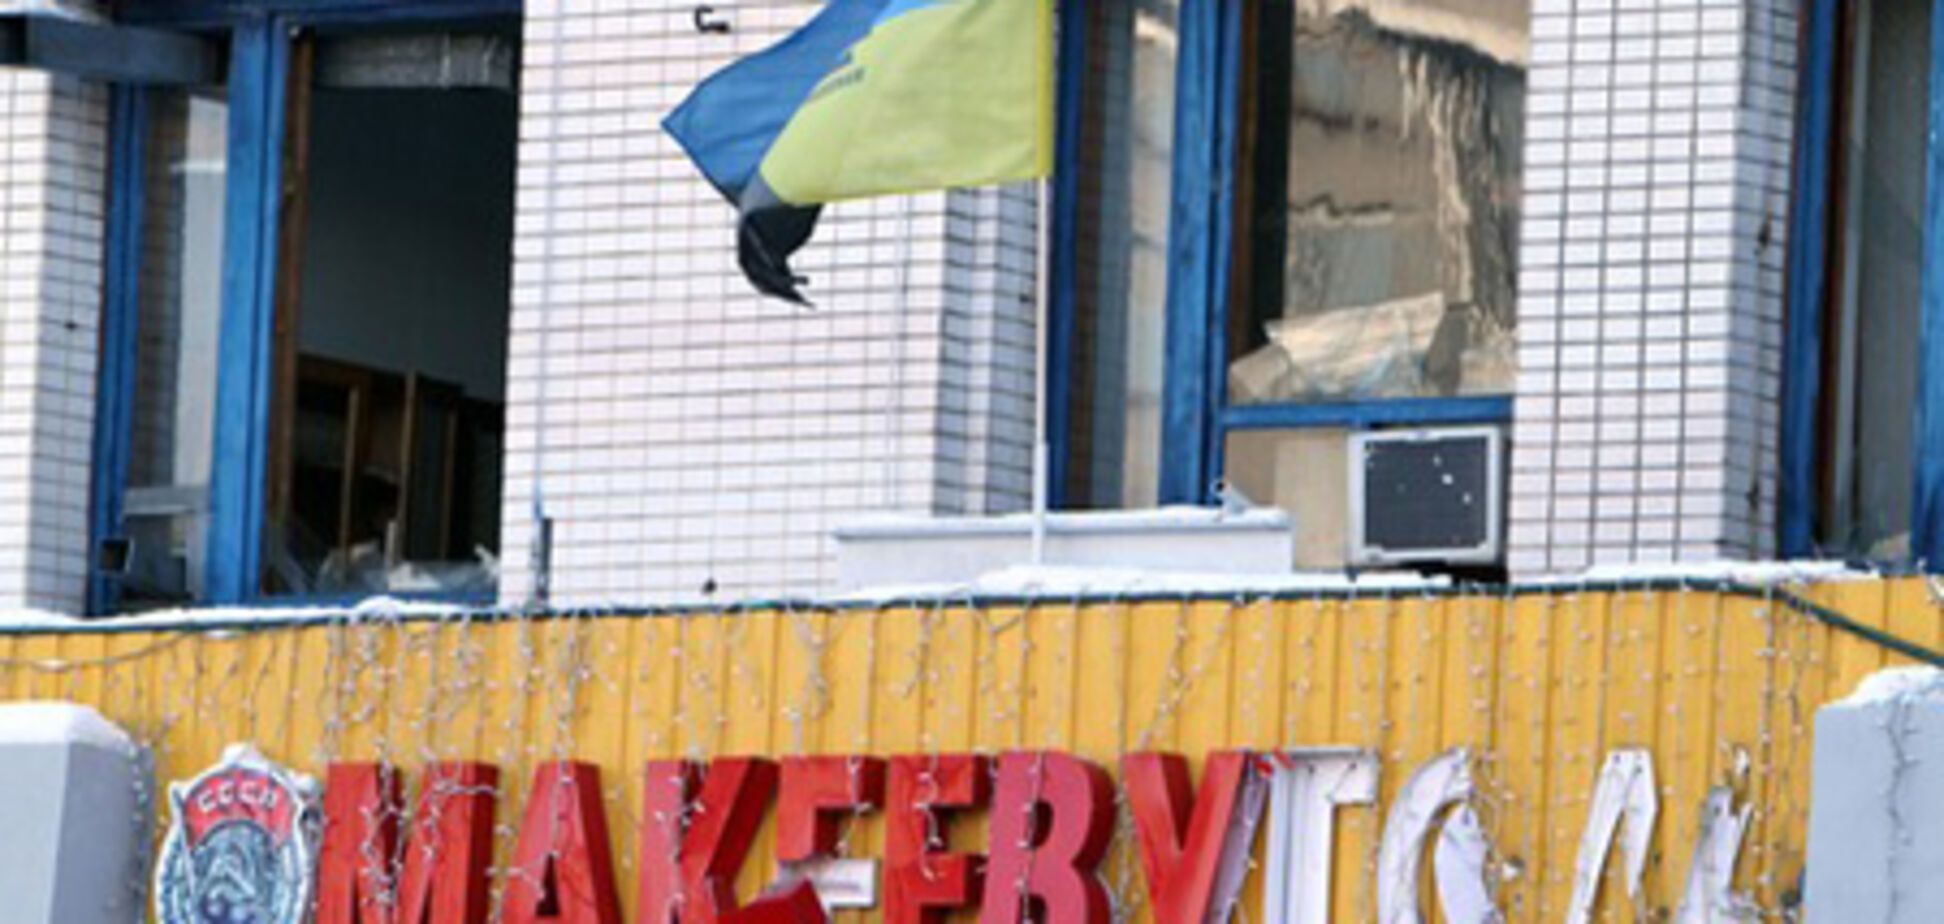 Експерт: В Україні є підстави для терористичних актів